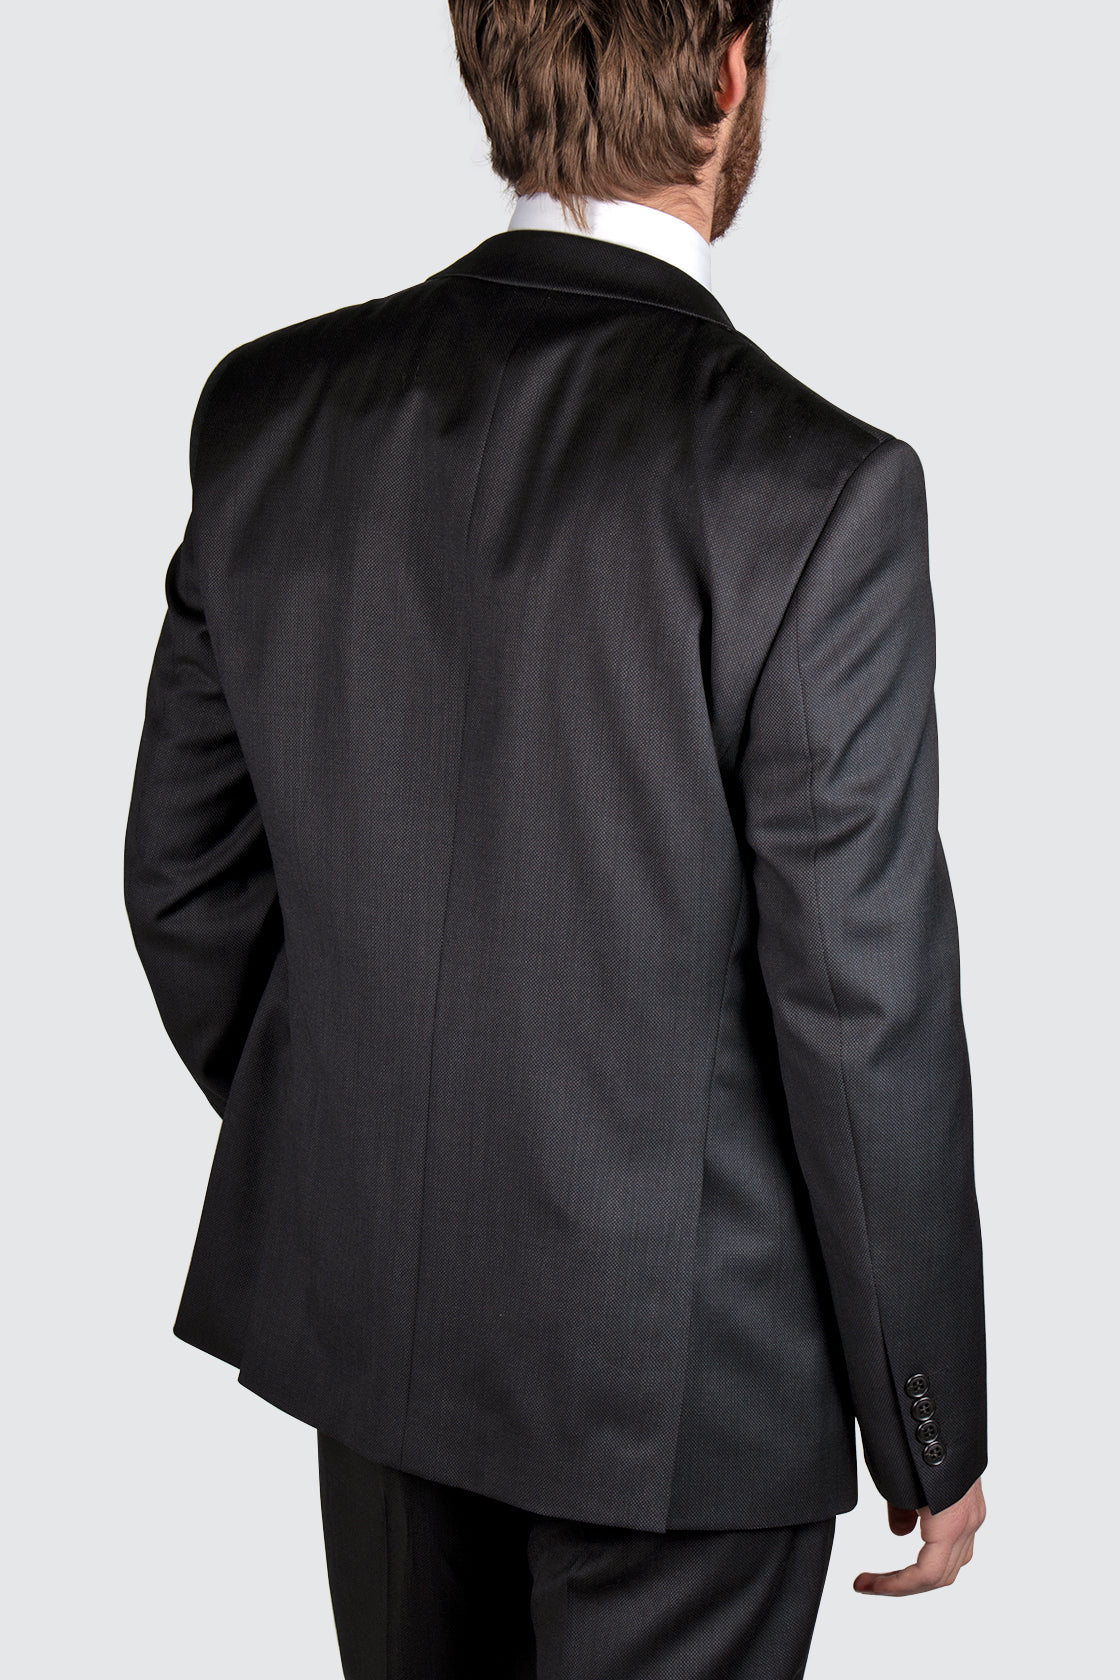 Routleys Michel Black Suit Jacket